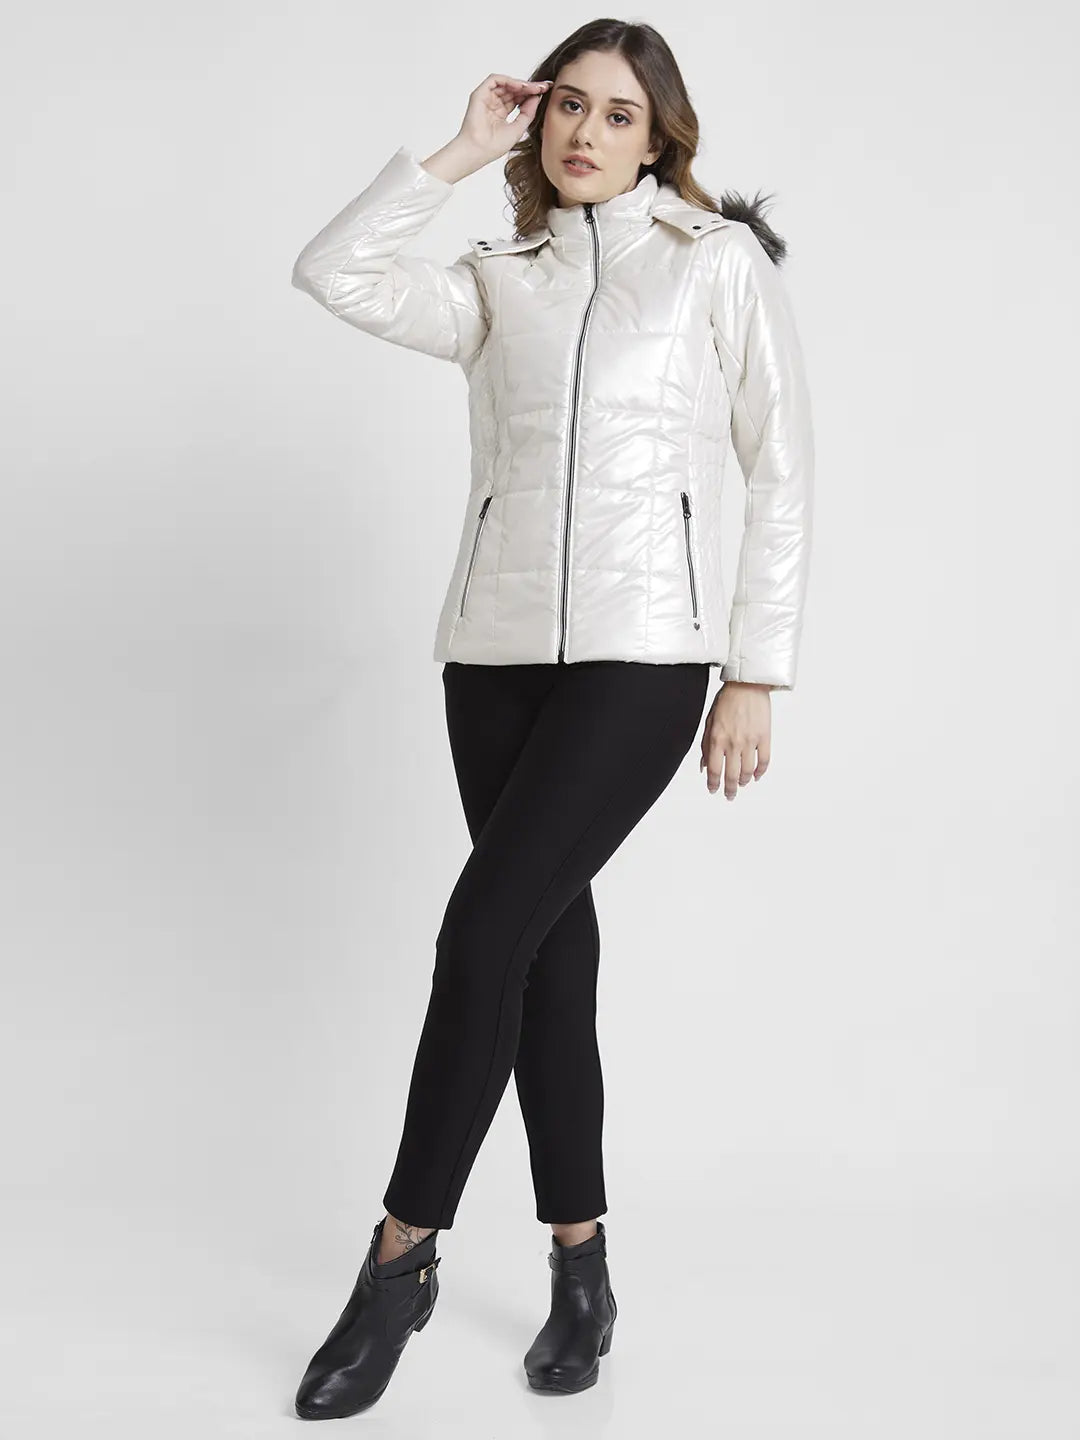 Spykar White Polyester Full Sleeve Casual Jacket For Men - mjk02bbwv111white